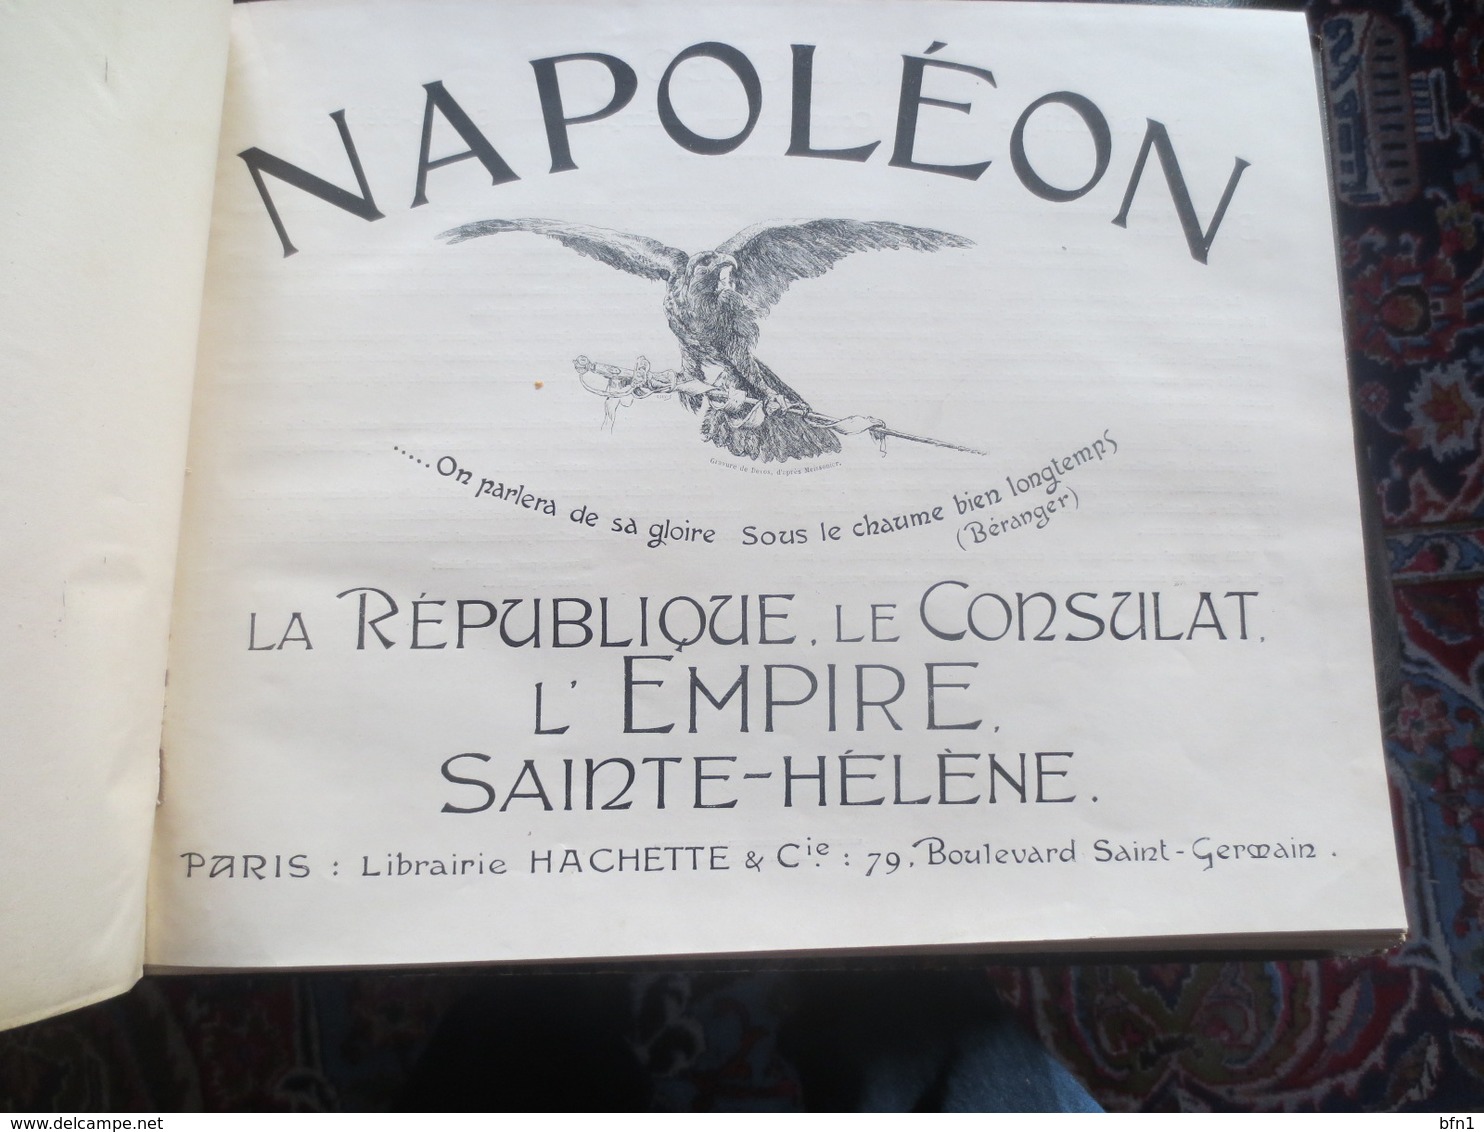 Napoleon - La Republique, Le Consulat, L'Empire Sainte-Helene - Histoire